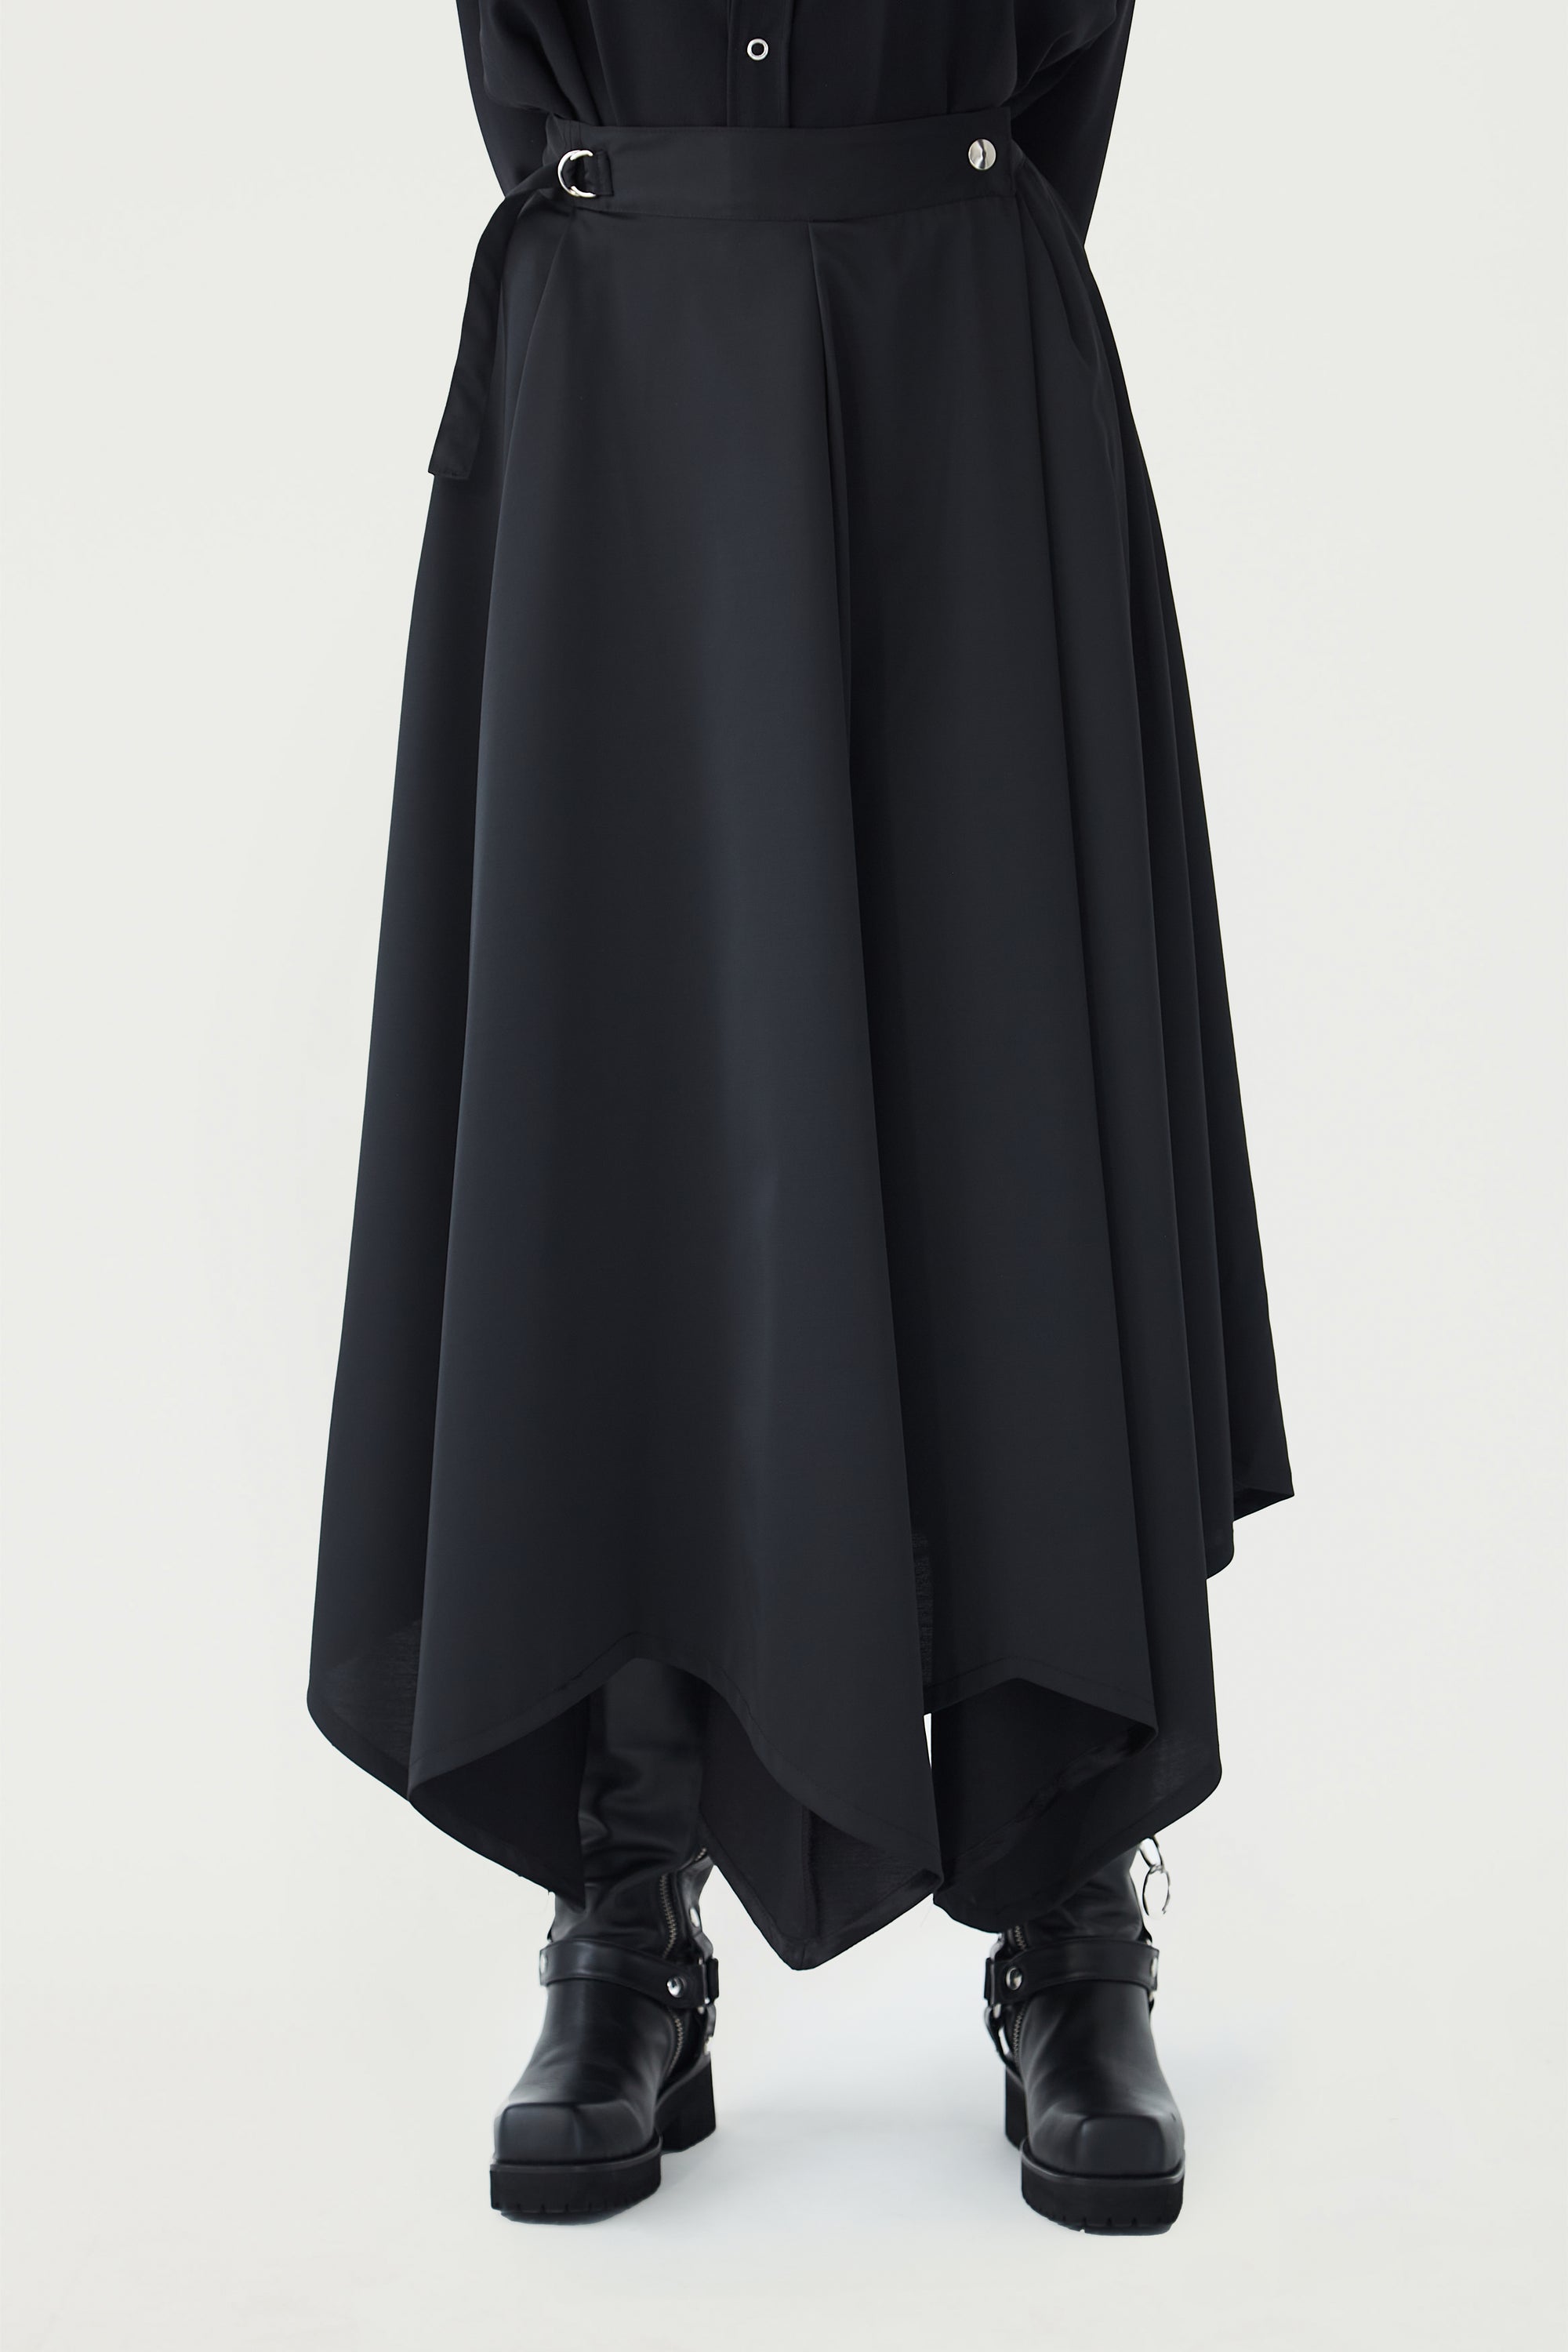 Folded Skirt